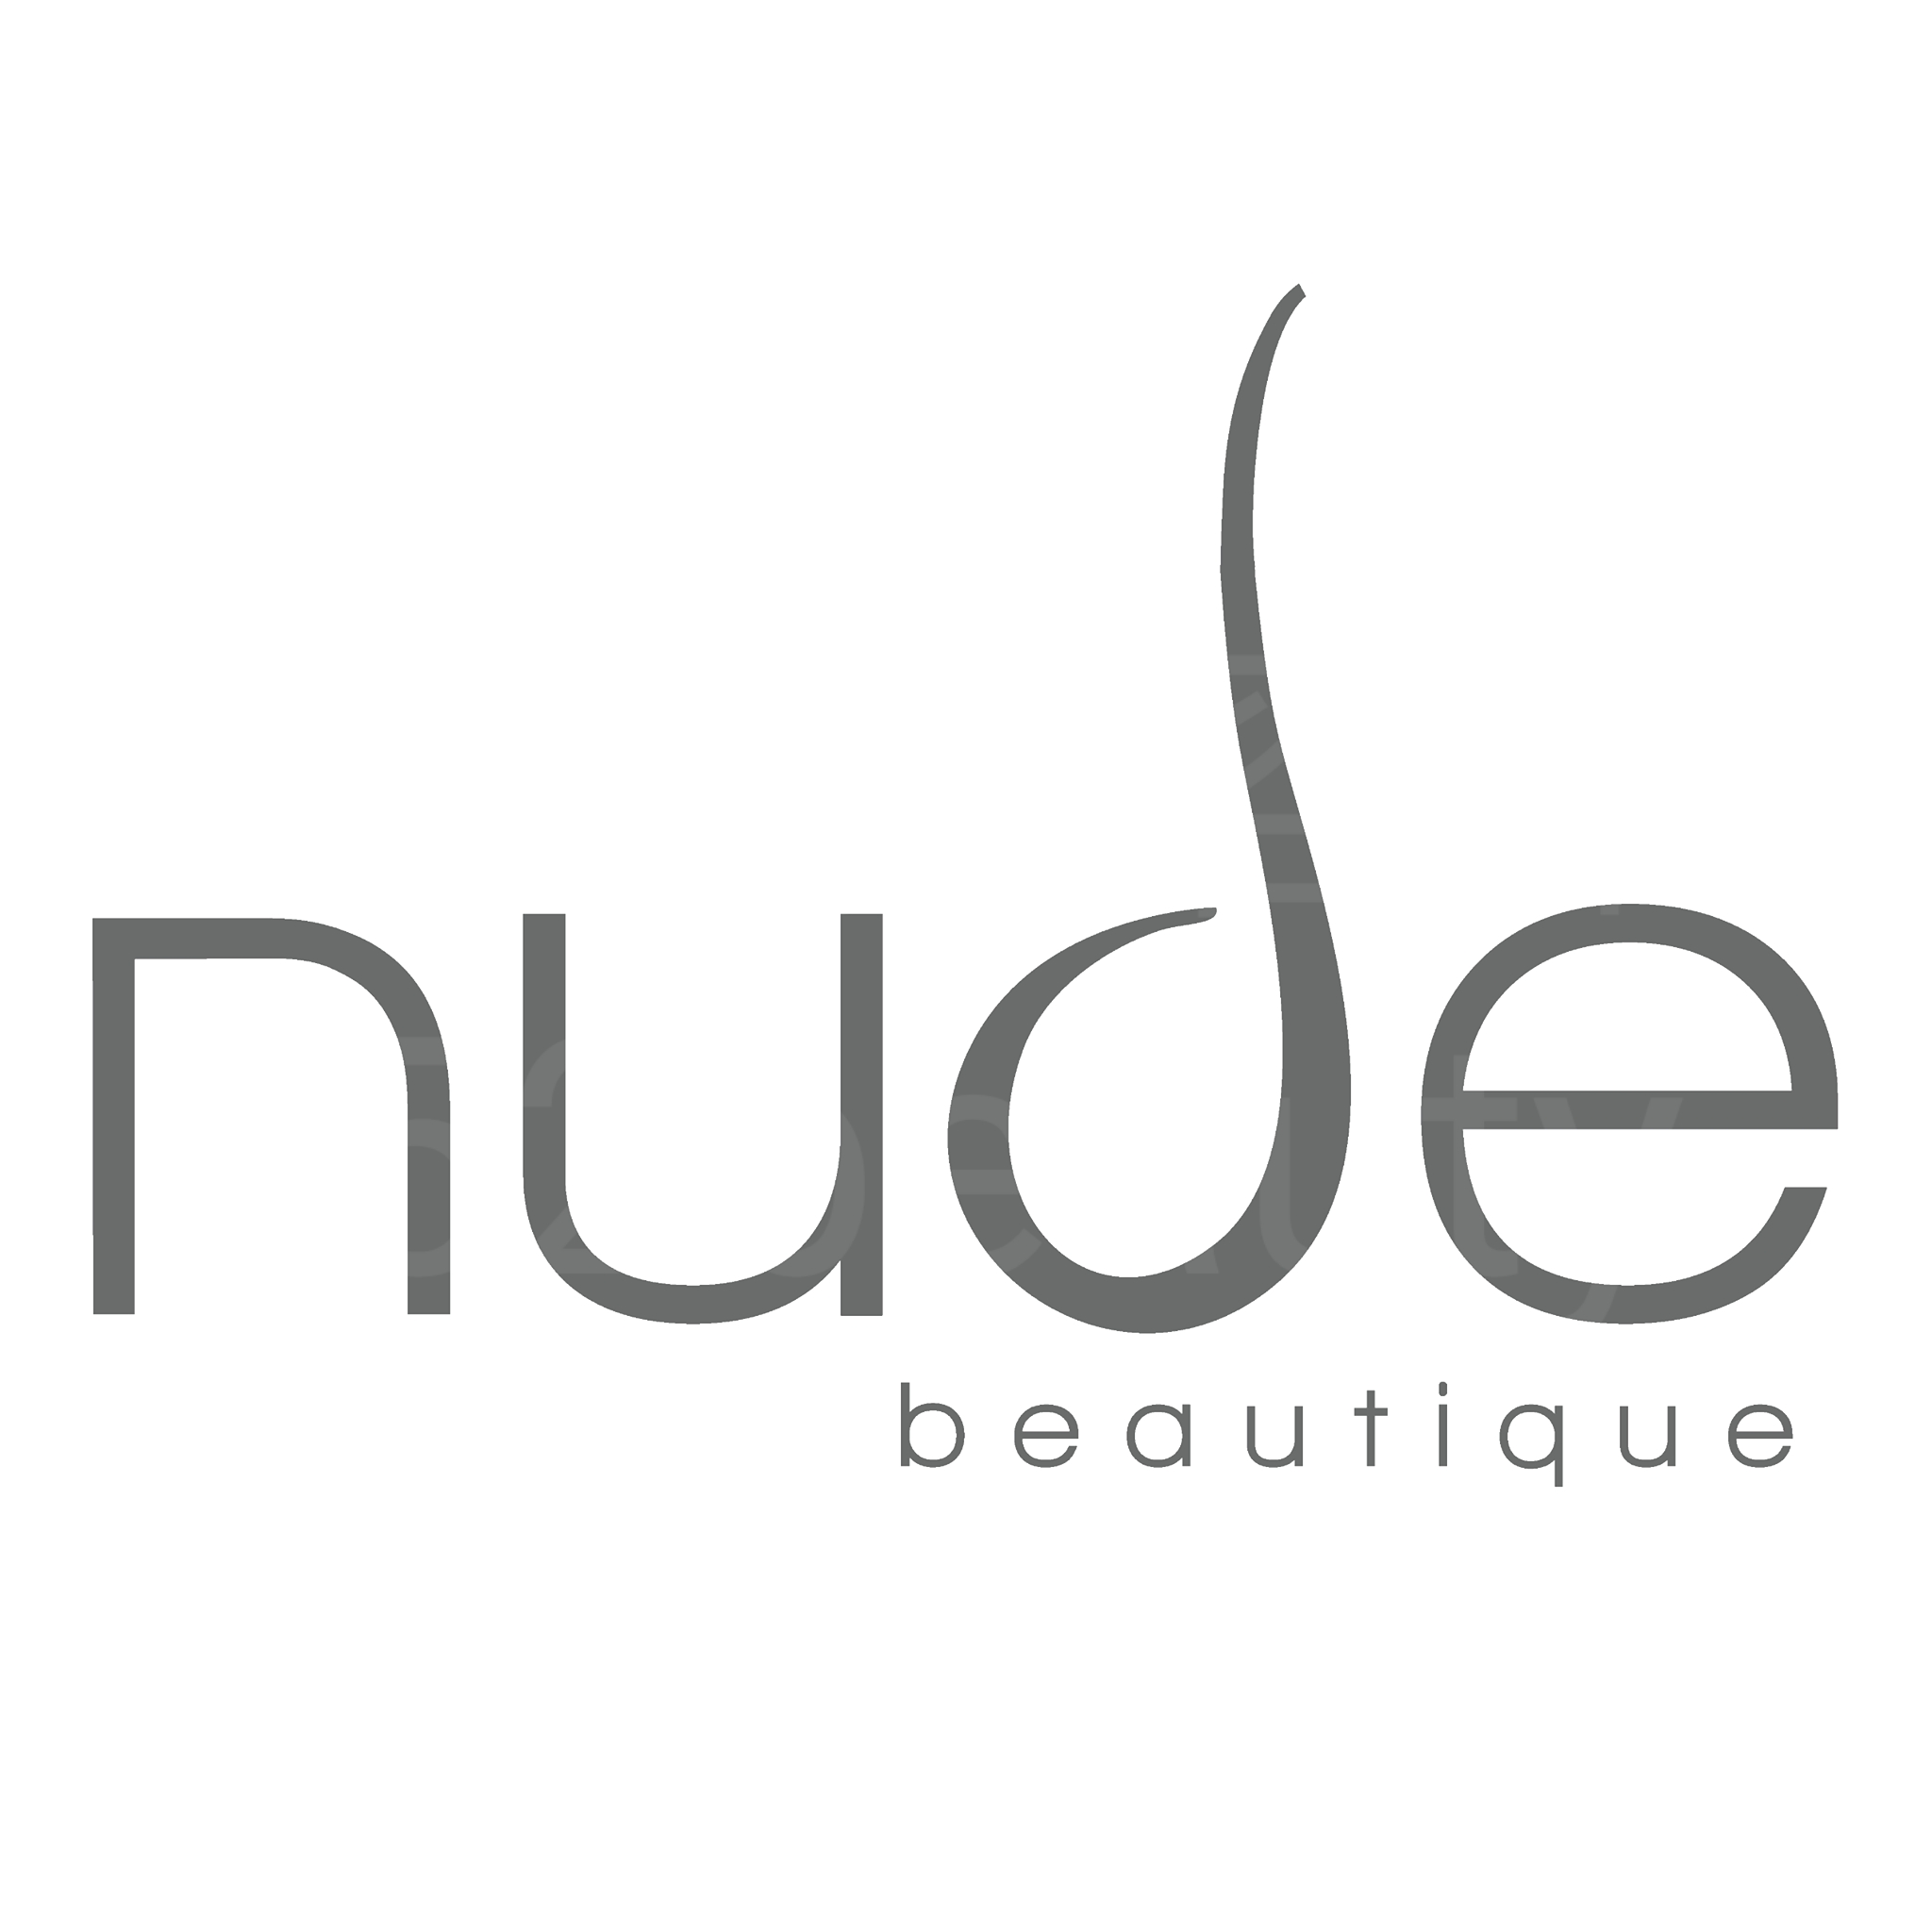 脫毛: nude beautique (蘭桂芳分店)